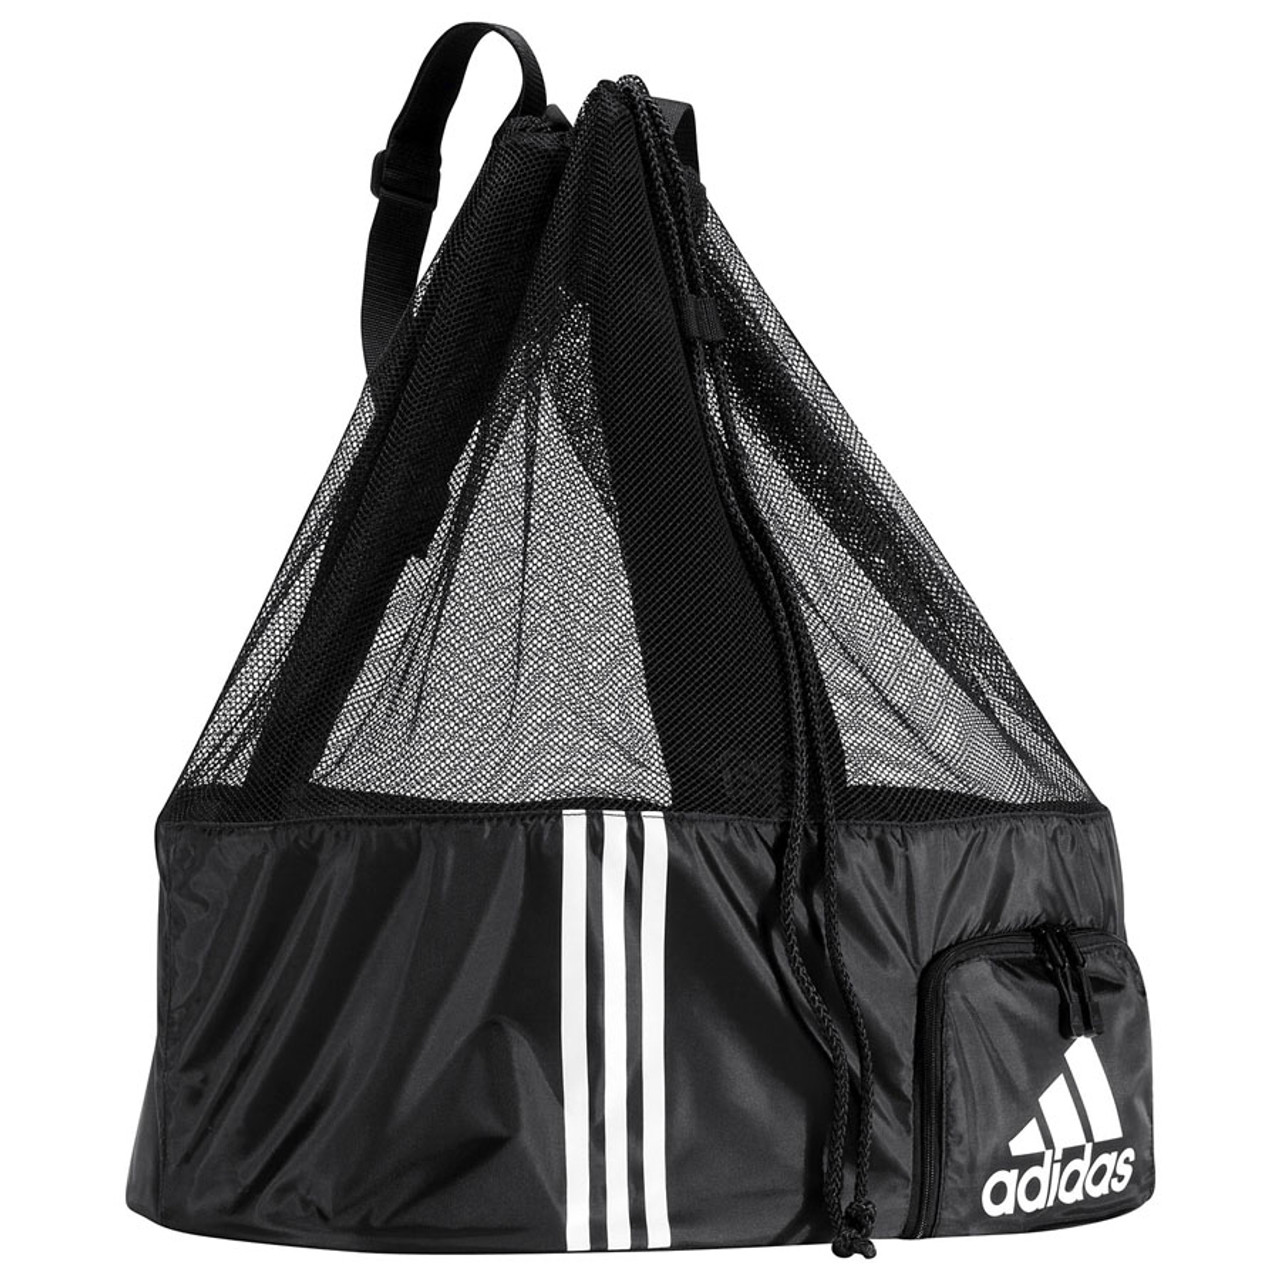 adidas soccer ball bag